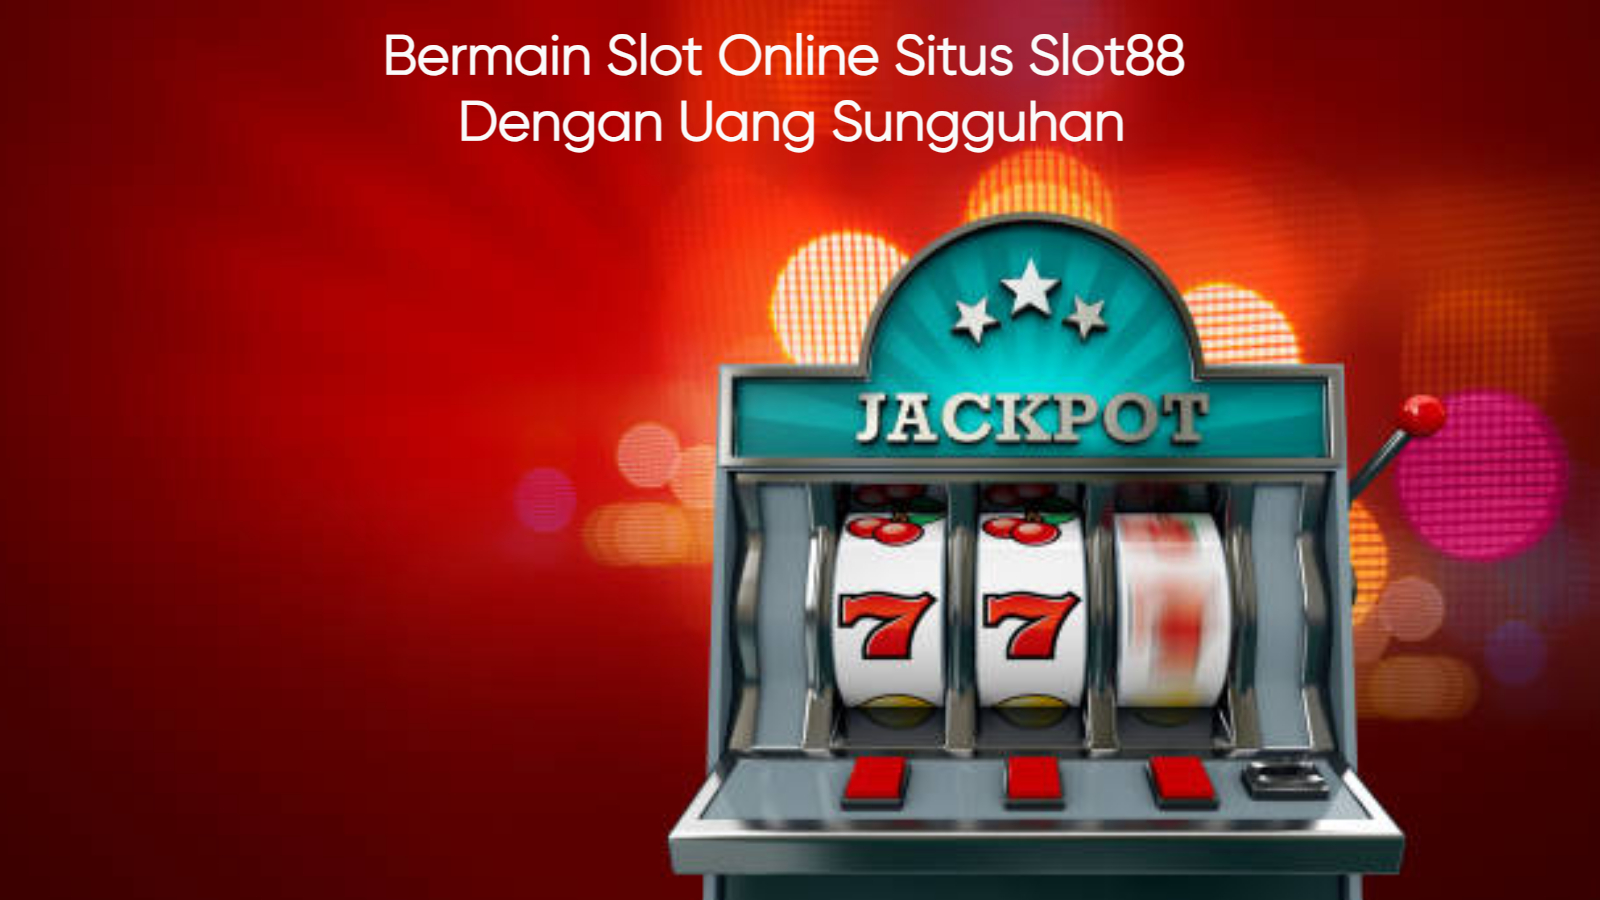 Bermain Slot Online Situs Slot88 Dengan Uang Sungguhan post thumbnail image